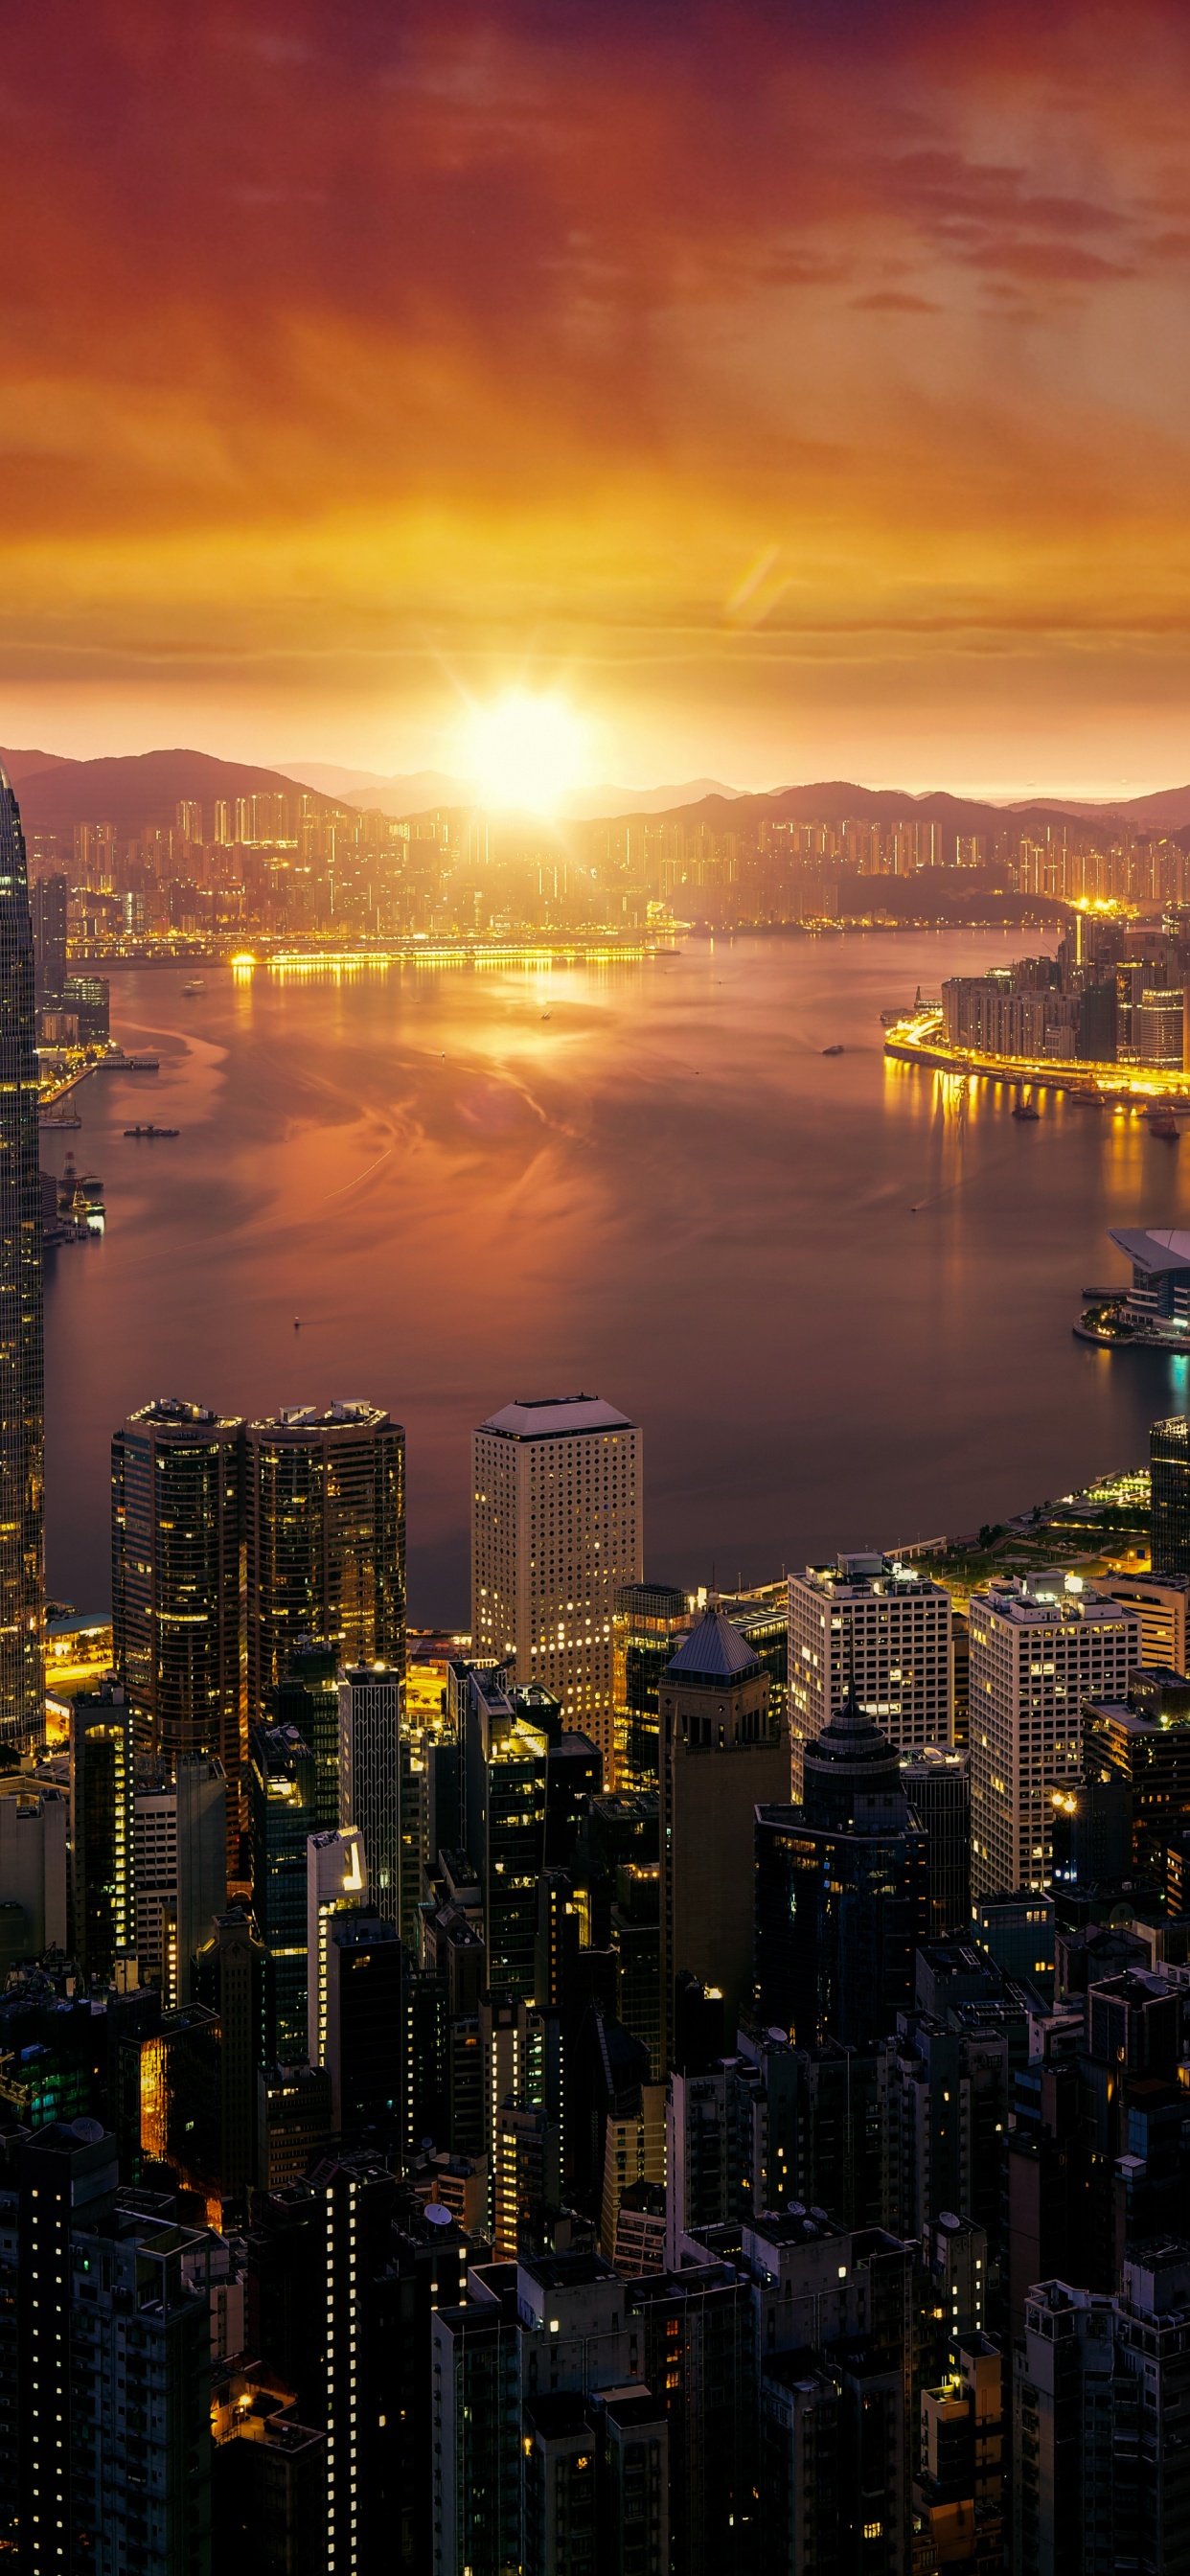 Hong Kong 4K Wallpaper, Cityscape, Sunrise, City lights, Skyline, 5K